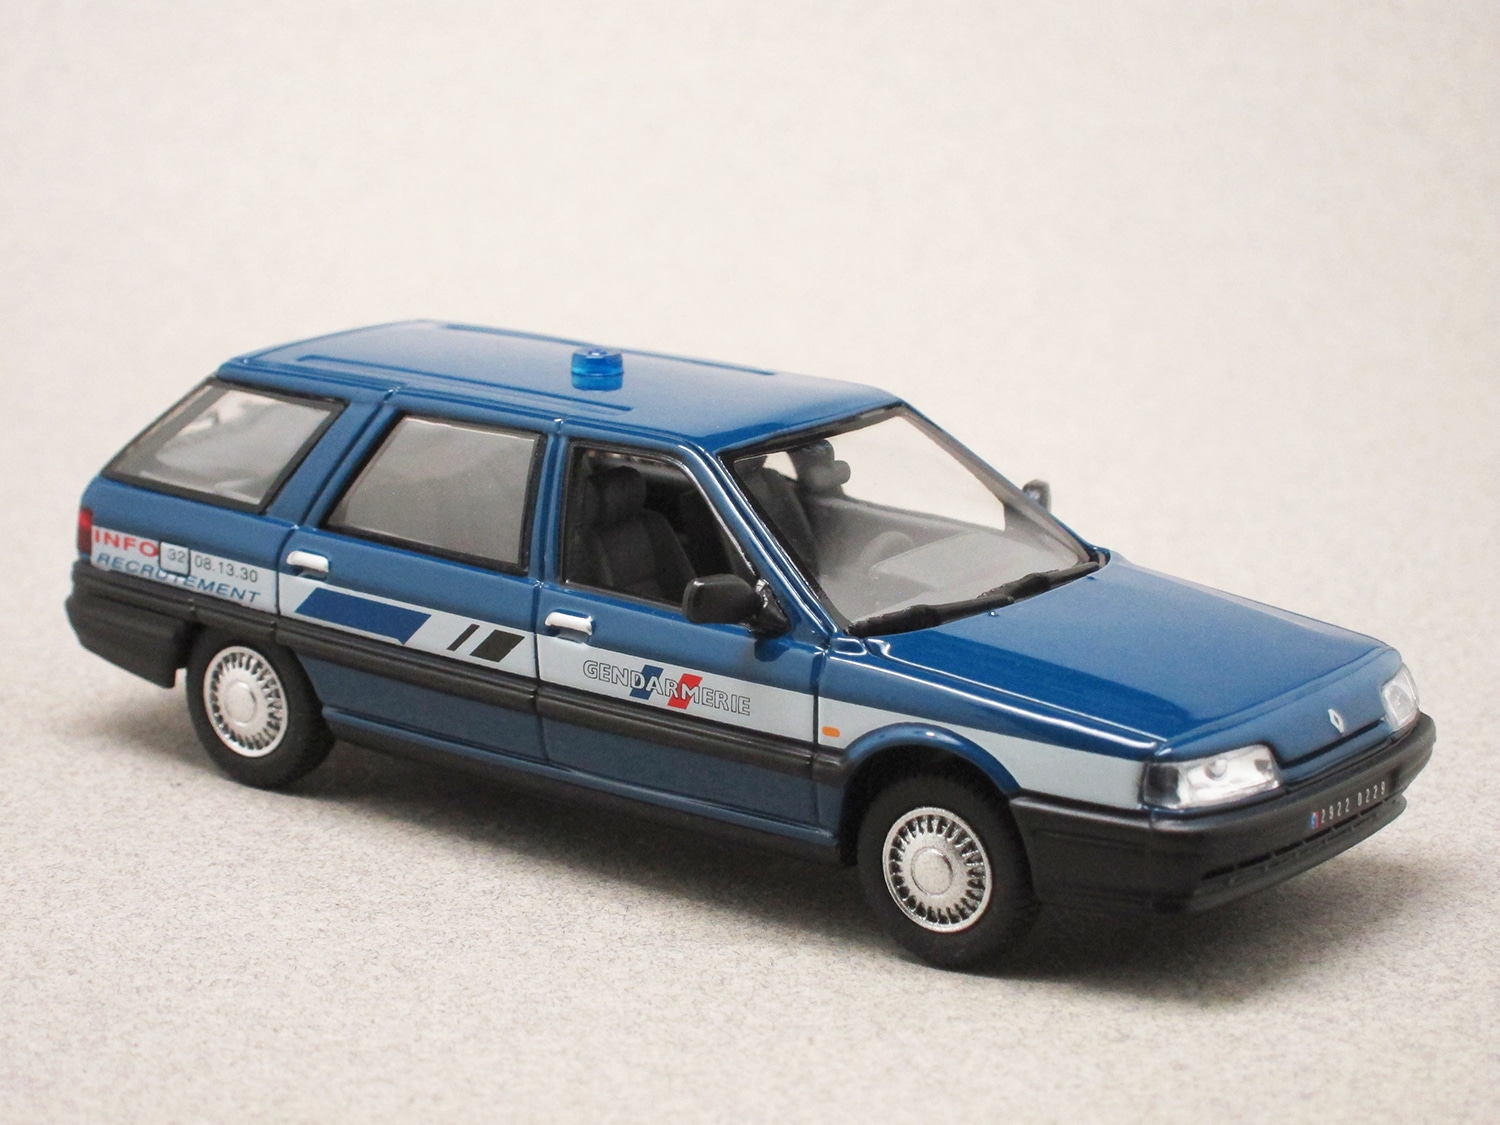 Renault 21 Nevada 1992 Gendarmerie info recrutement (Norev) 1/43e